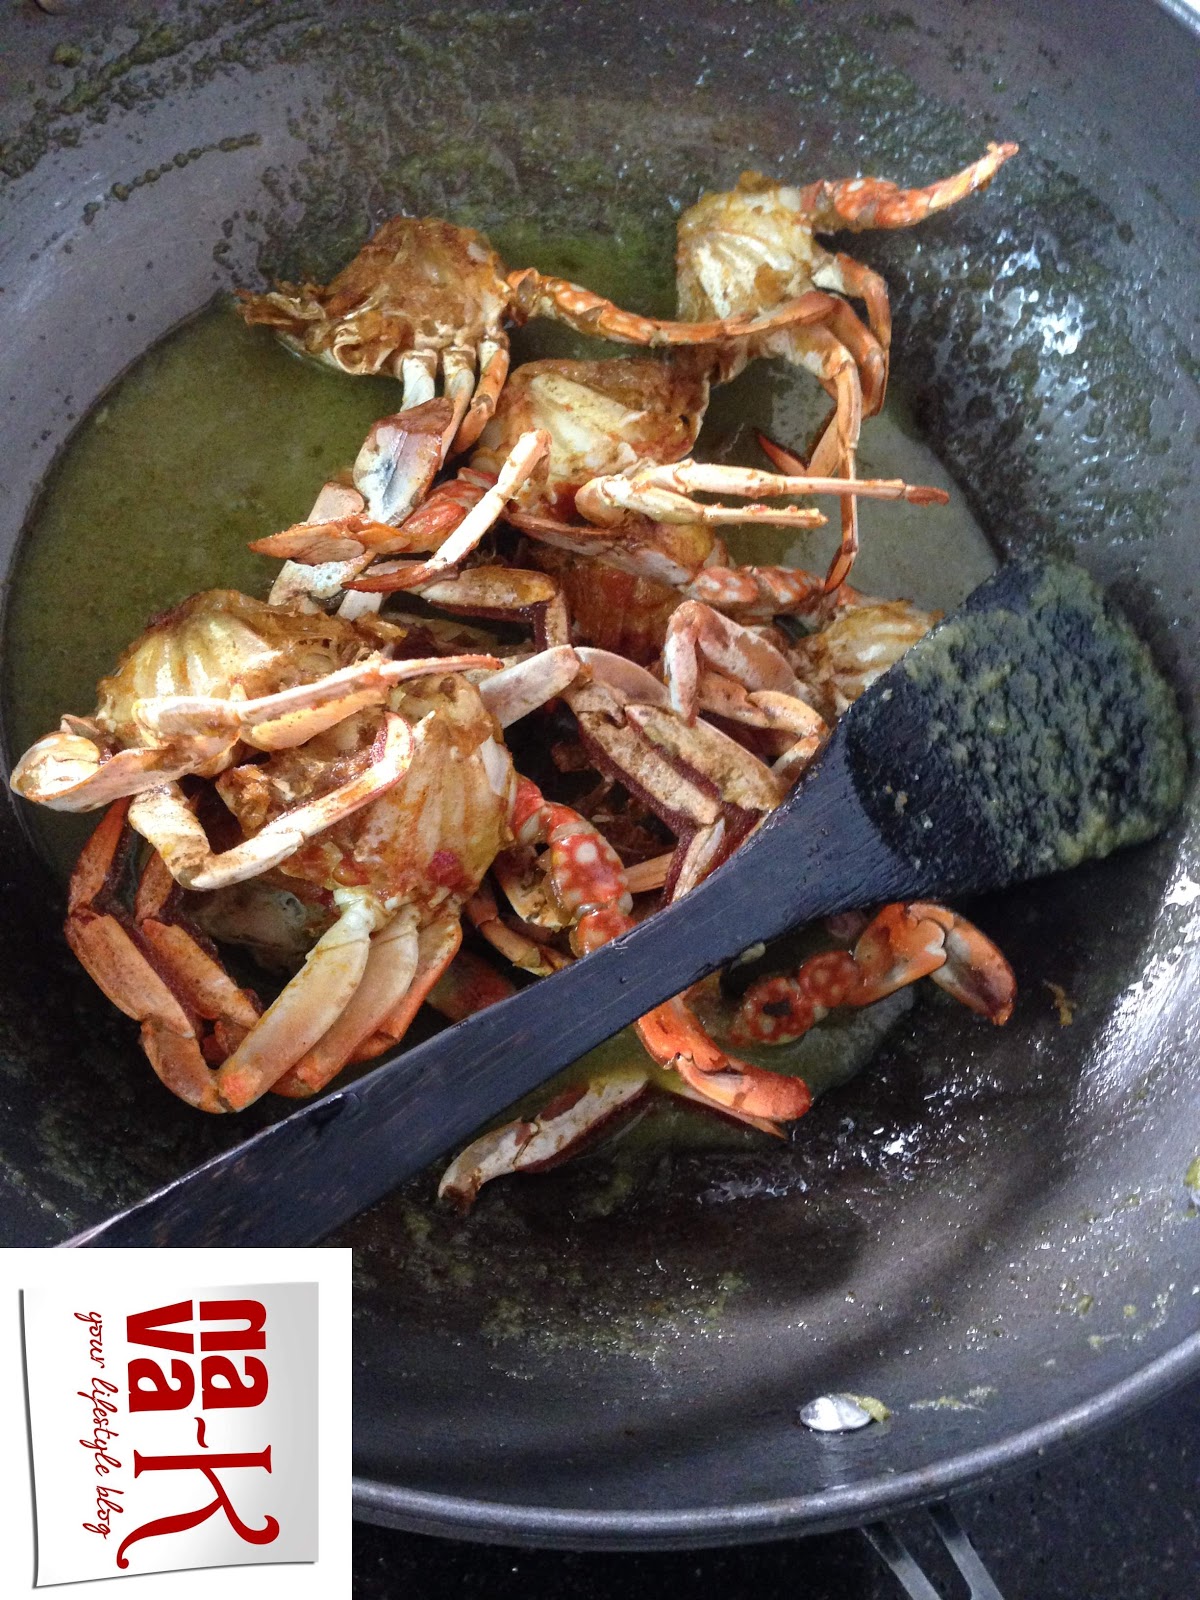 nava-k: Thai Green Crab Curry